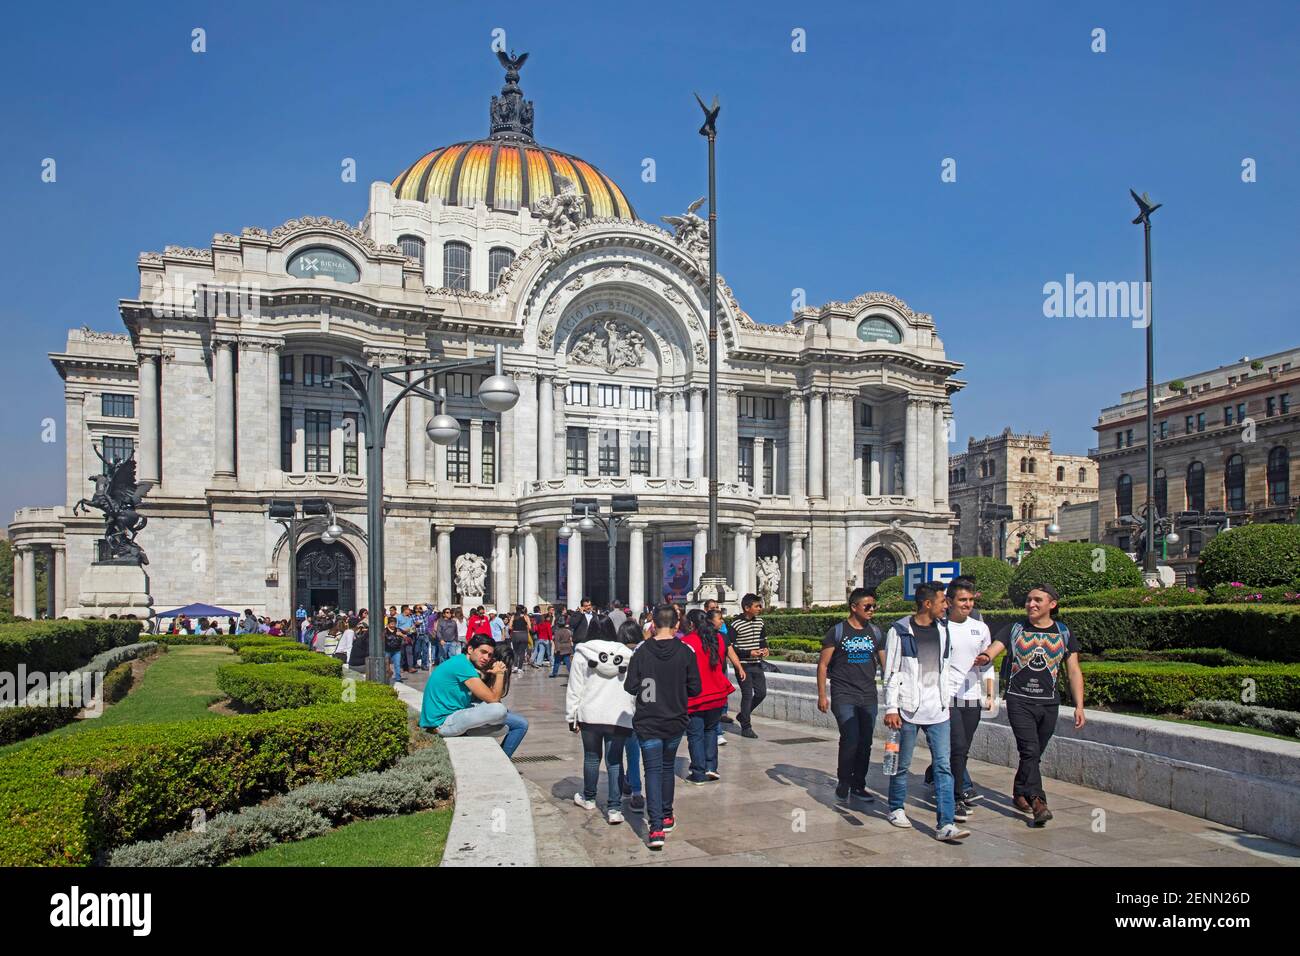 Palacio de Bellas Artes / Palacio de Bellas Artes de estilo Art Nouveau y neoclásico, centro cultural en el centro histórico de la ciudad de México Foto de stock